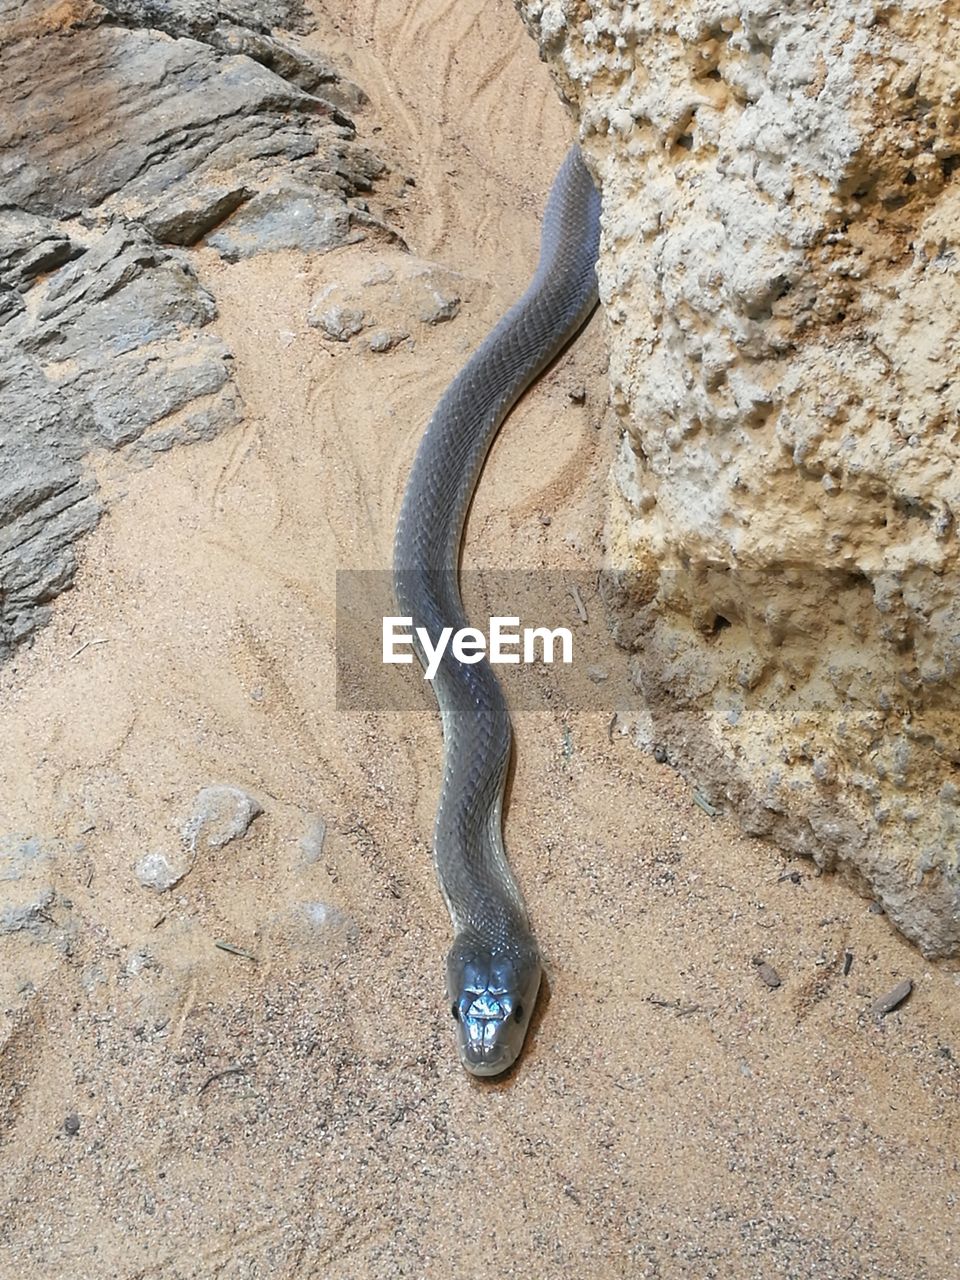 High angle view of snake on sand